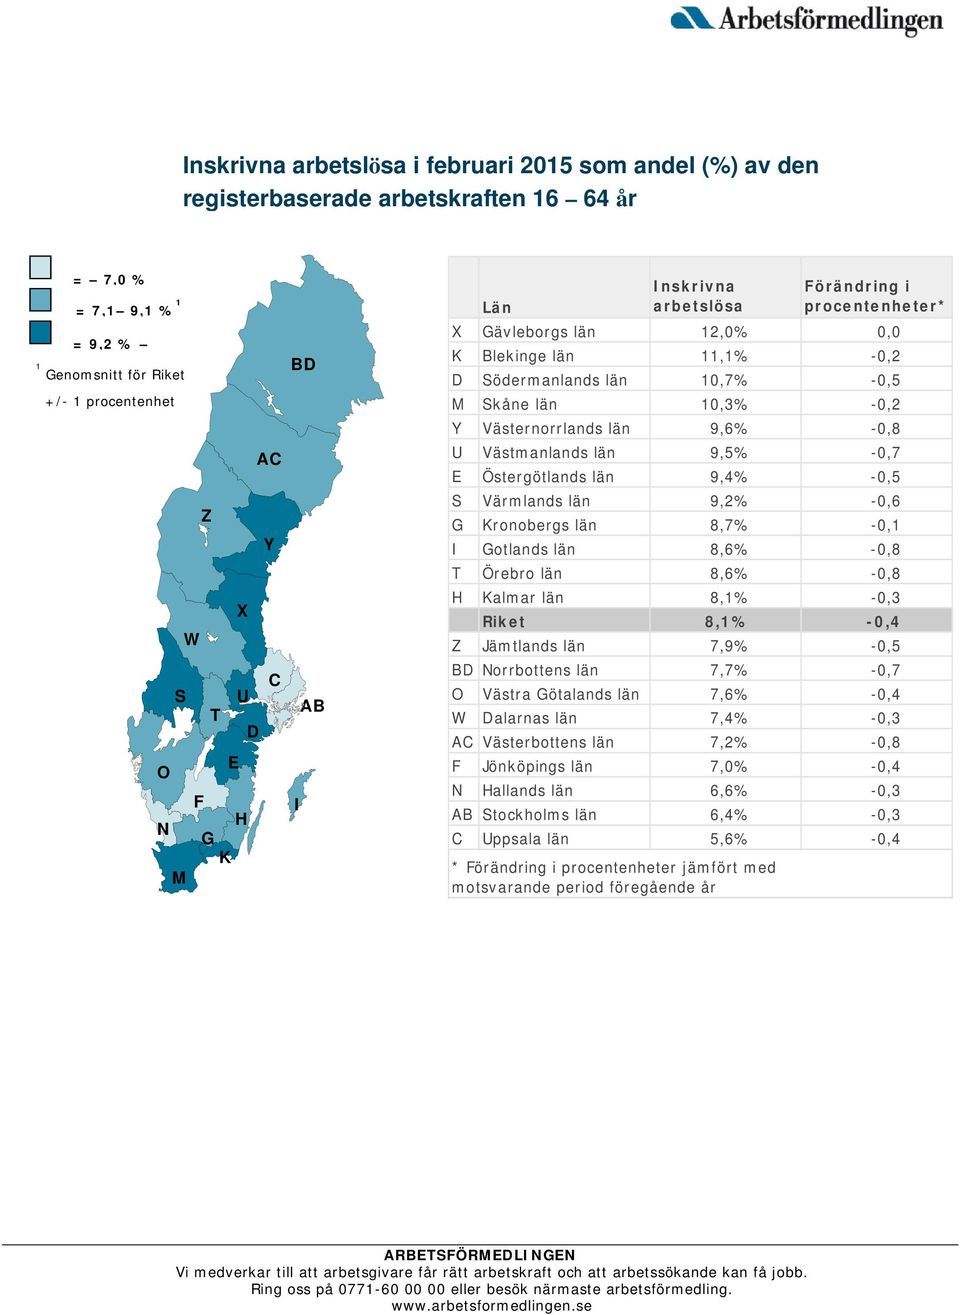 9,6% -0,8 U Västmanlands län 9,5% -0,7 E Östergötlands län 9,4% -0,5 S Värmlands län 9,2% -0,6 G Kronobergs län 8,7% -0,1 I Gotlands län 8,6% -0,8 T Örebro län 8,6% -0,8 H Kalmar län 8,1% -0,3 Riket